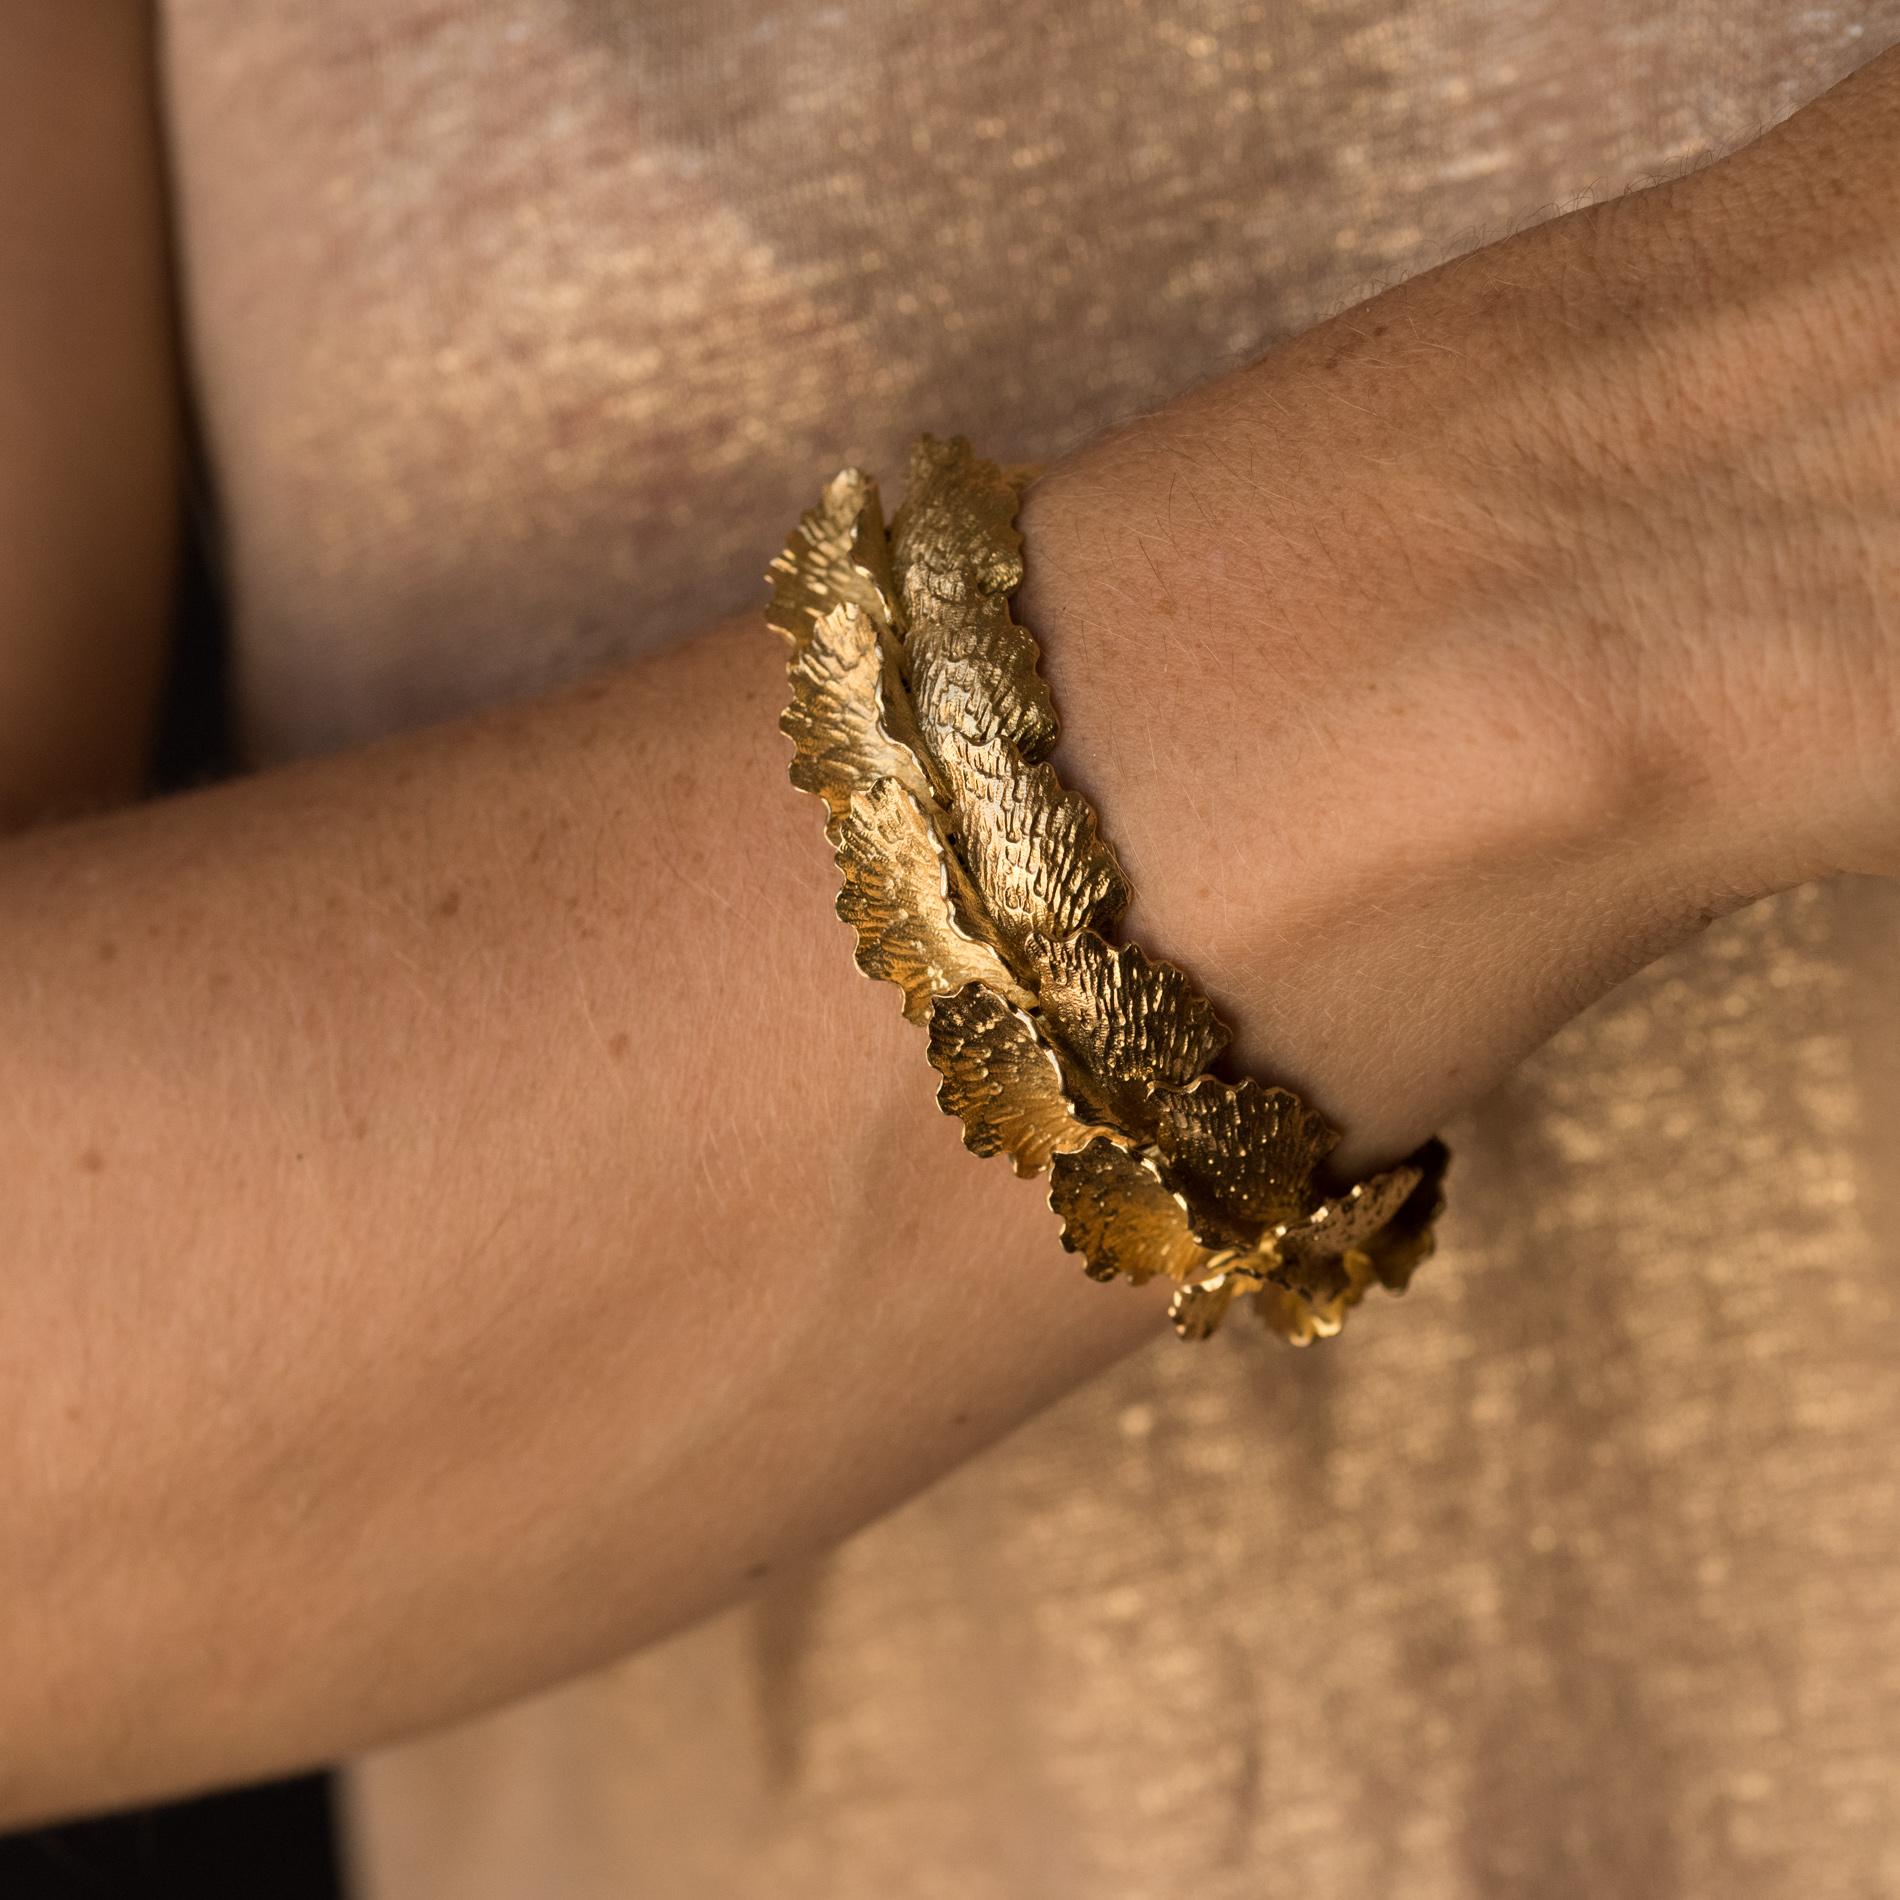 Armband aus 18K Gelbgold, Nashornkopfpunze.
Dieses Armband aus Antikgold ist eine Ode an die Natur und ihre kostbare Interpretation. Es besteht aus zart geschwungenen Ginkgo-Biloba-Blättern, die fein ausgearbeitet und gegliedert sind. Die